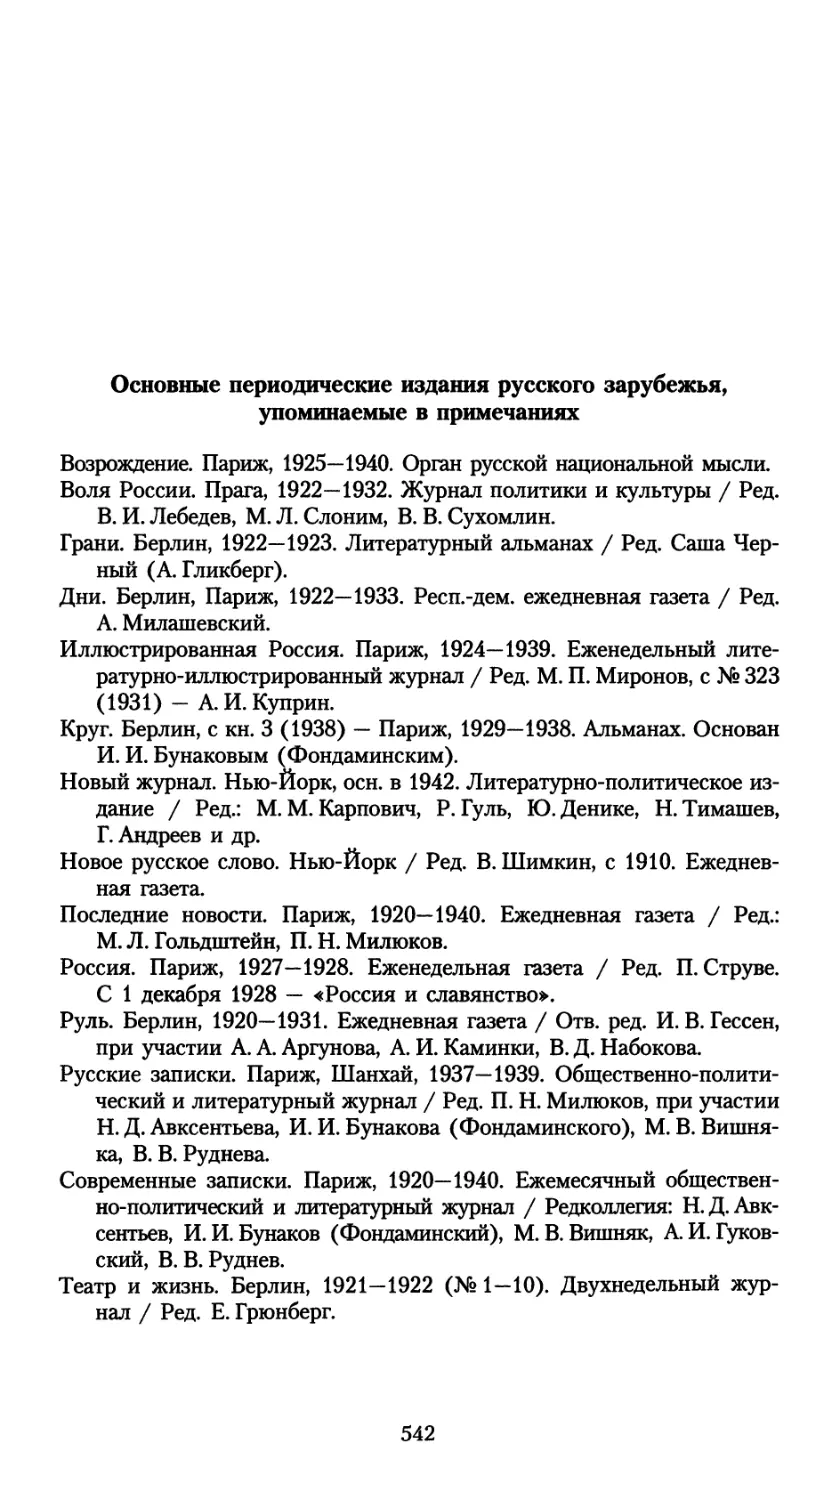 Основные периодические издания русского зарубежья, упоминаемые в примечаниях